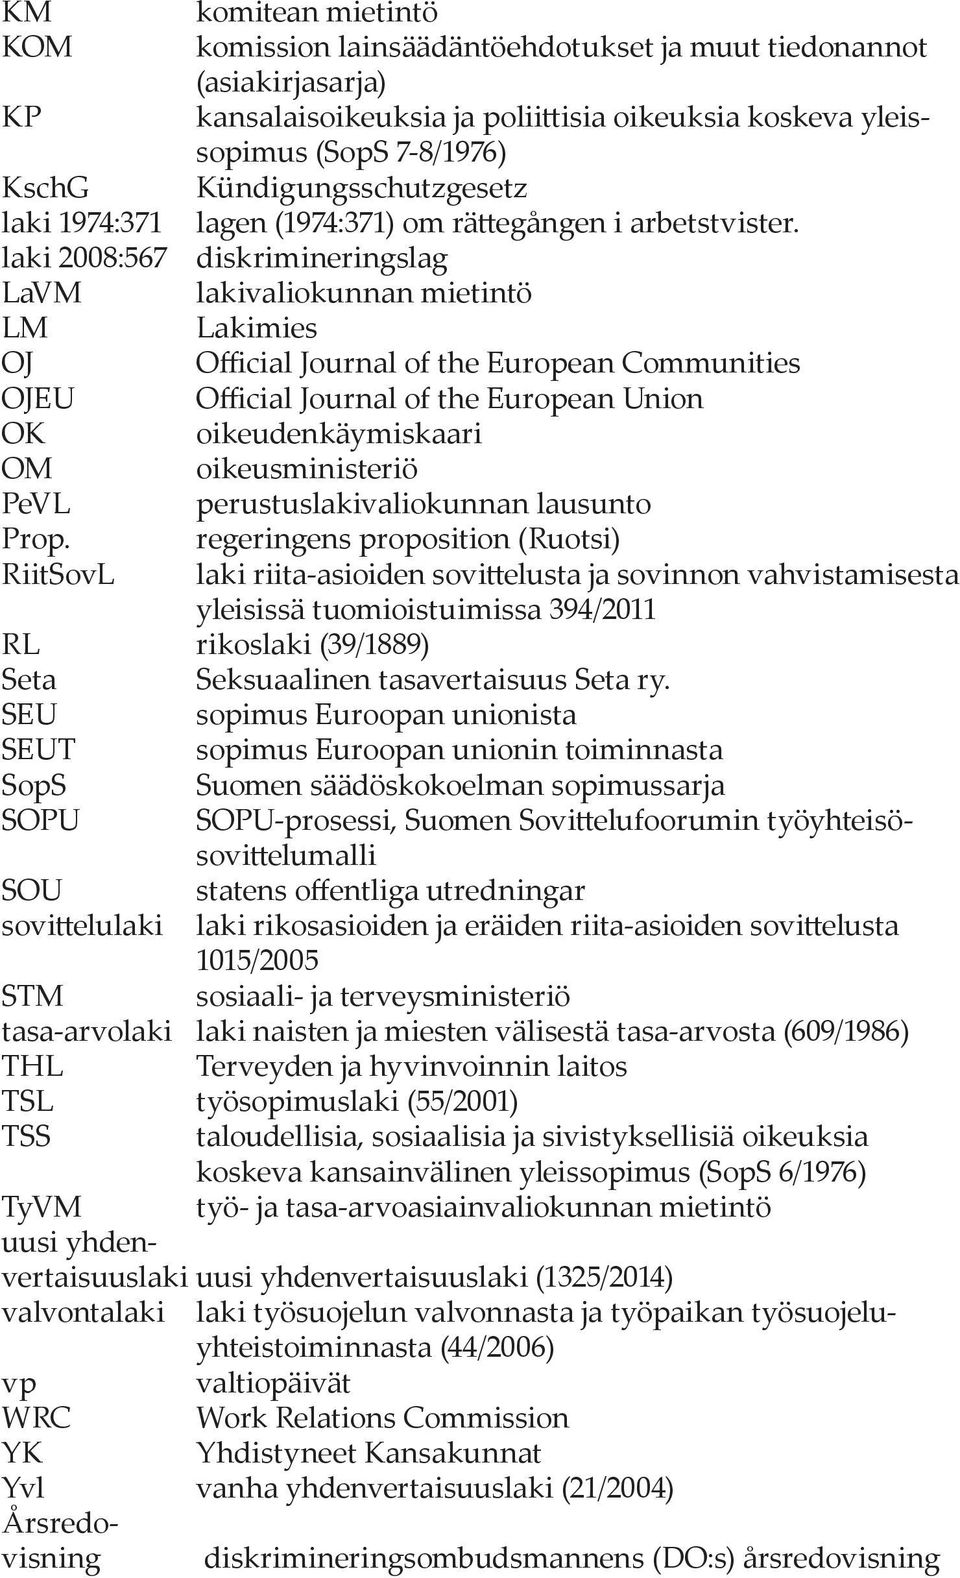 laki 2008:567 diskrimineringslag LaVM lakivaliokunnan mietintö LM Lakimies OJ Official Journal of the European Communities OJEU Official Journal of the European Union OK oikeudenkäymiskaari OM